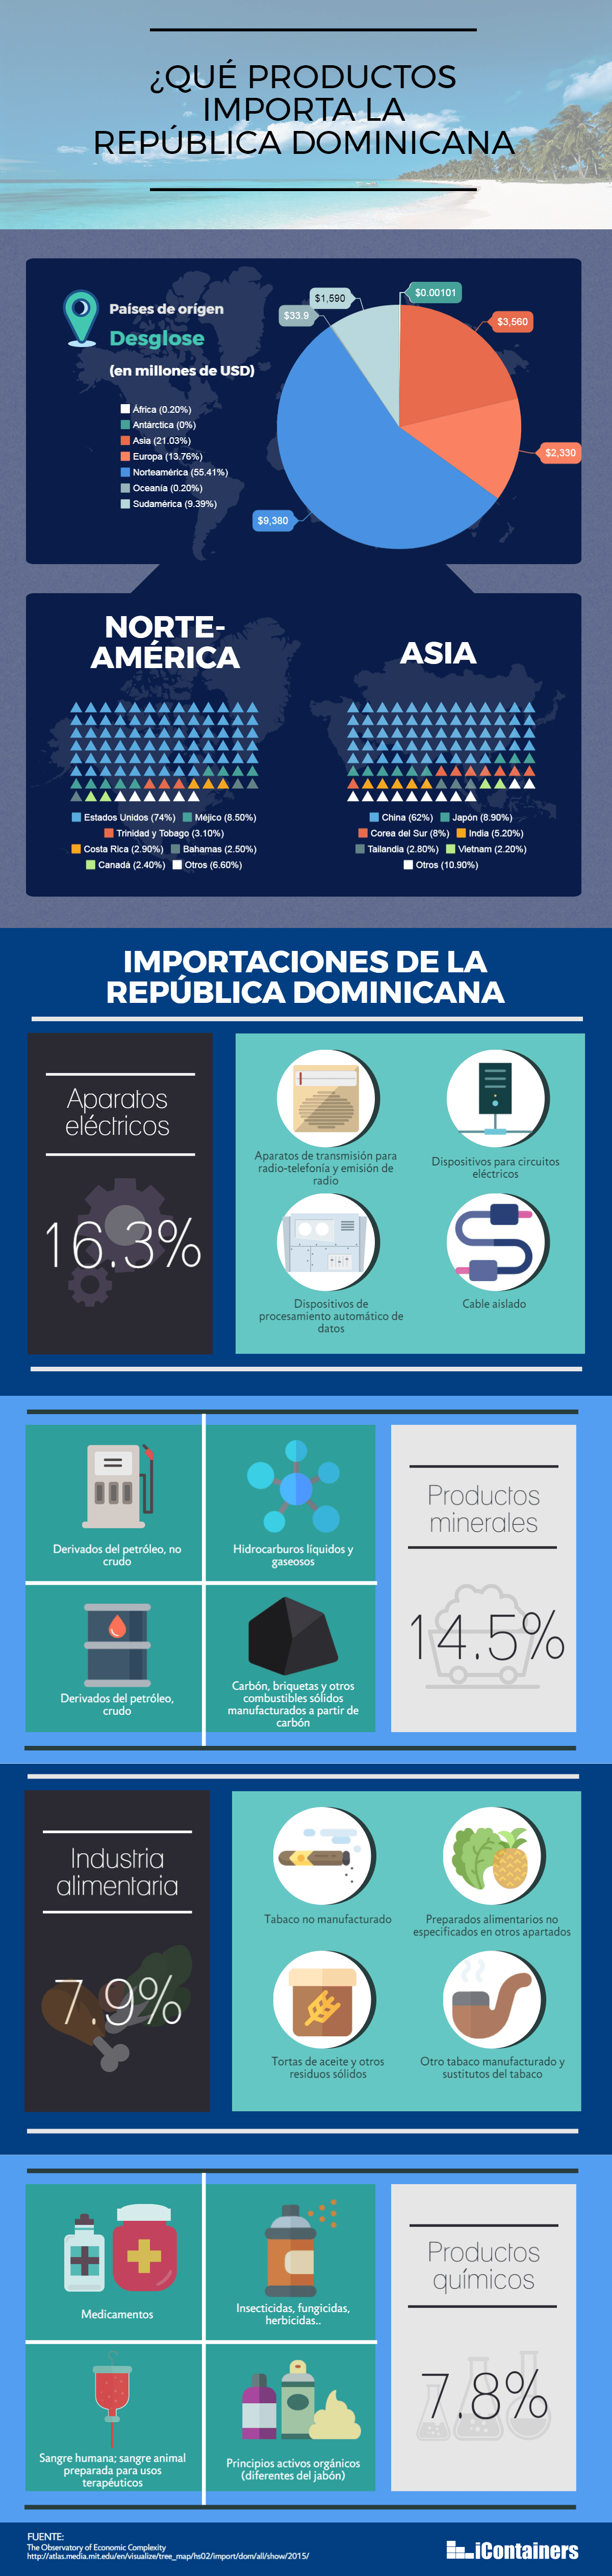 infografia-importaciones-dominicana.png